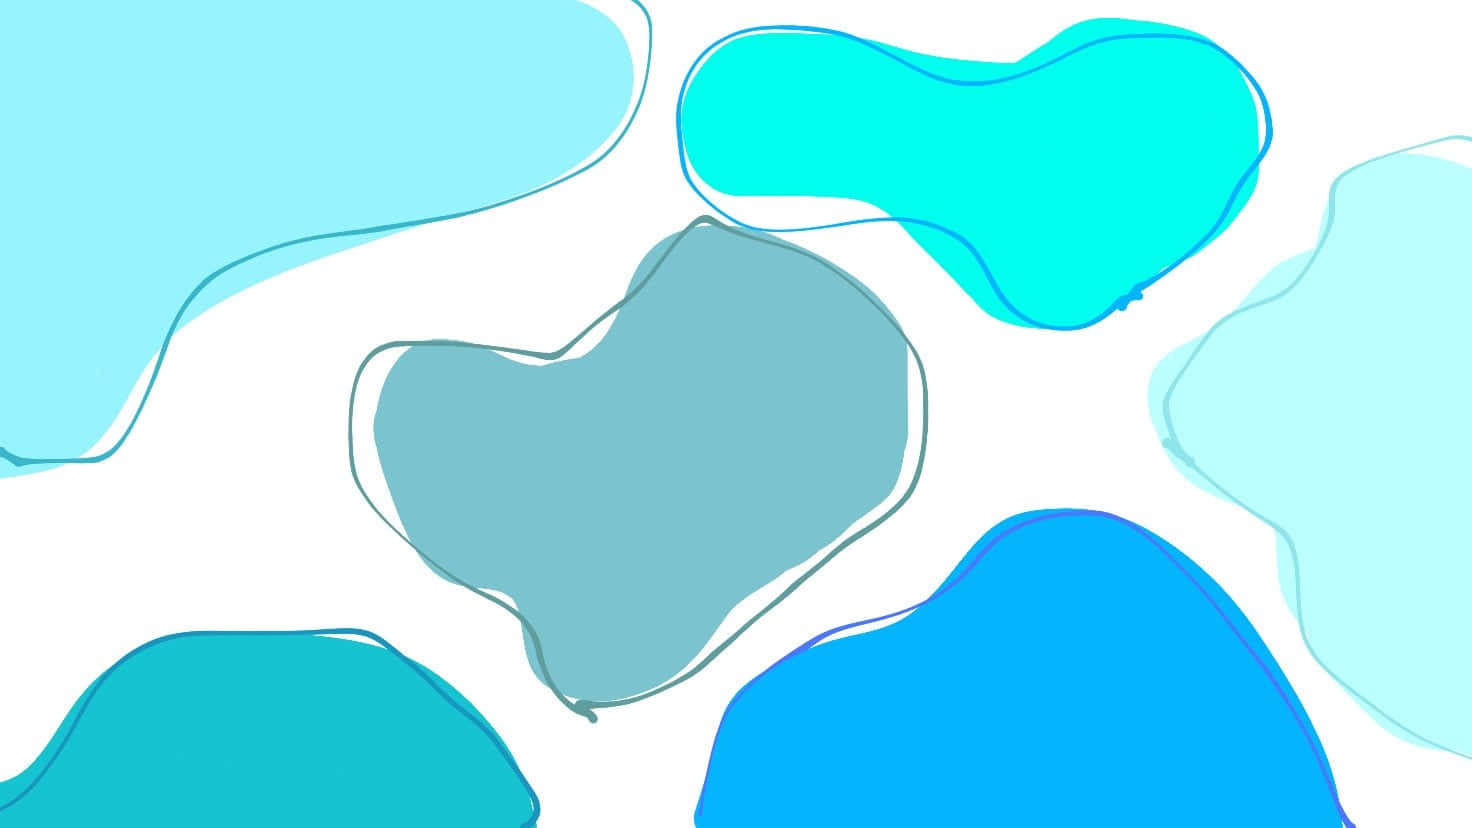 Uncorazón De Color Azul Y Blanco En Forma De Corazón Con Un Fondo Azul Fondo de pantalla